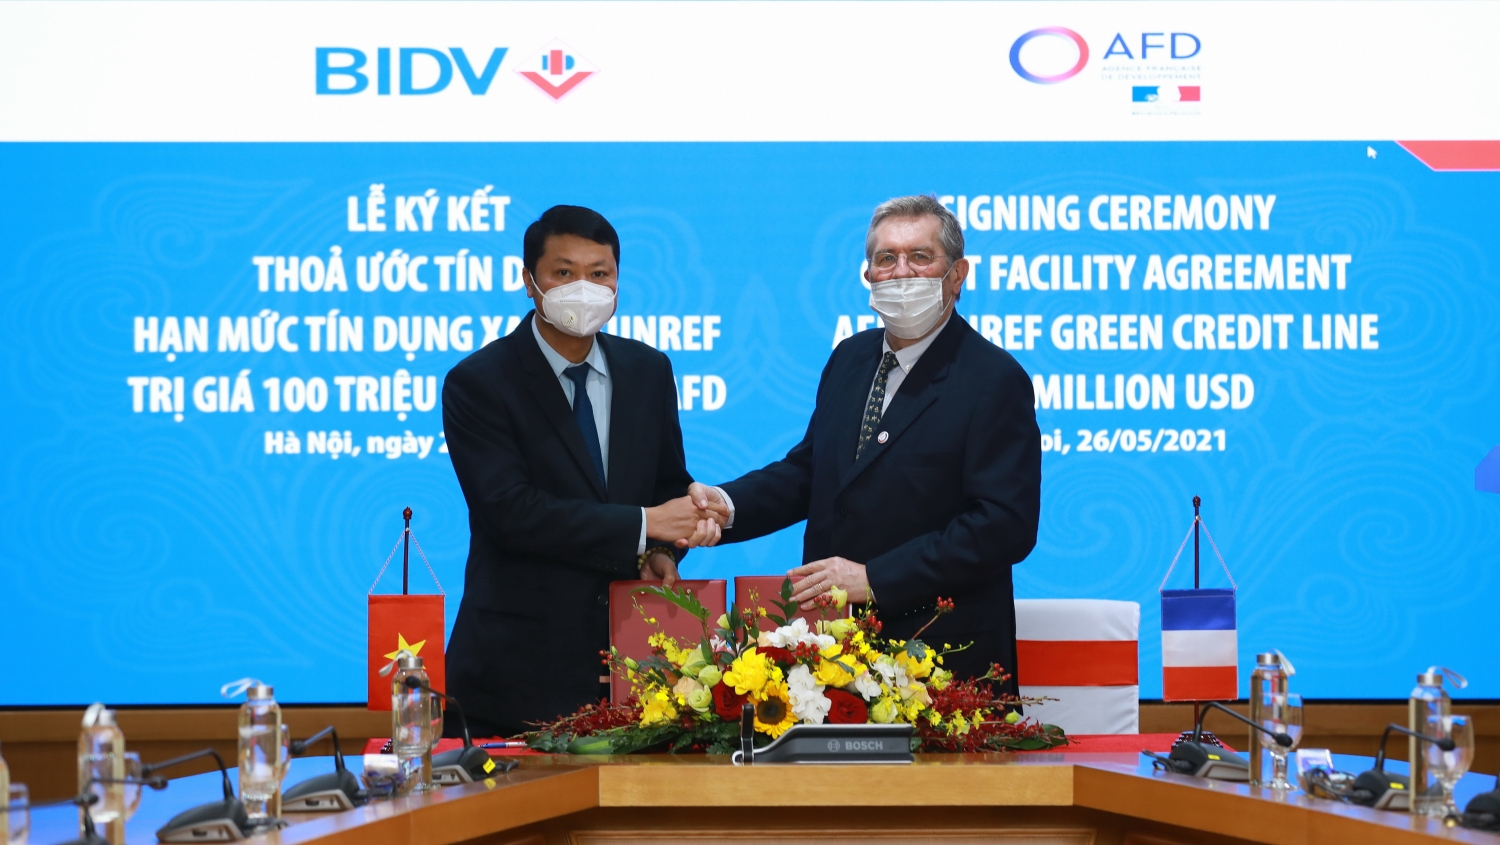 AFD cung cấp hạn mức 100 triệu USD cho BIDV để tài trợ  các doanh nghiệp trong lĩnh vực năng lượng tái tạo, tiết kiệm năng lượng